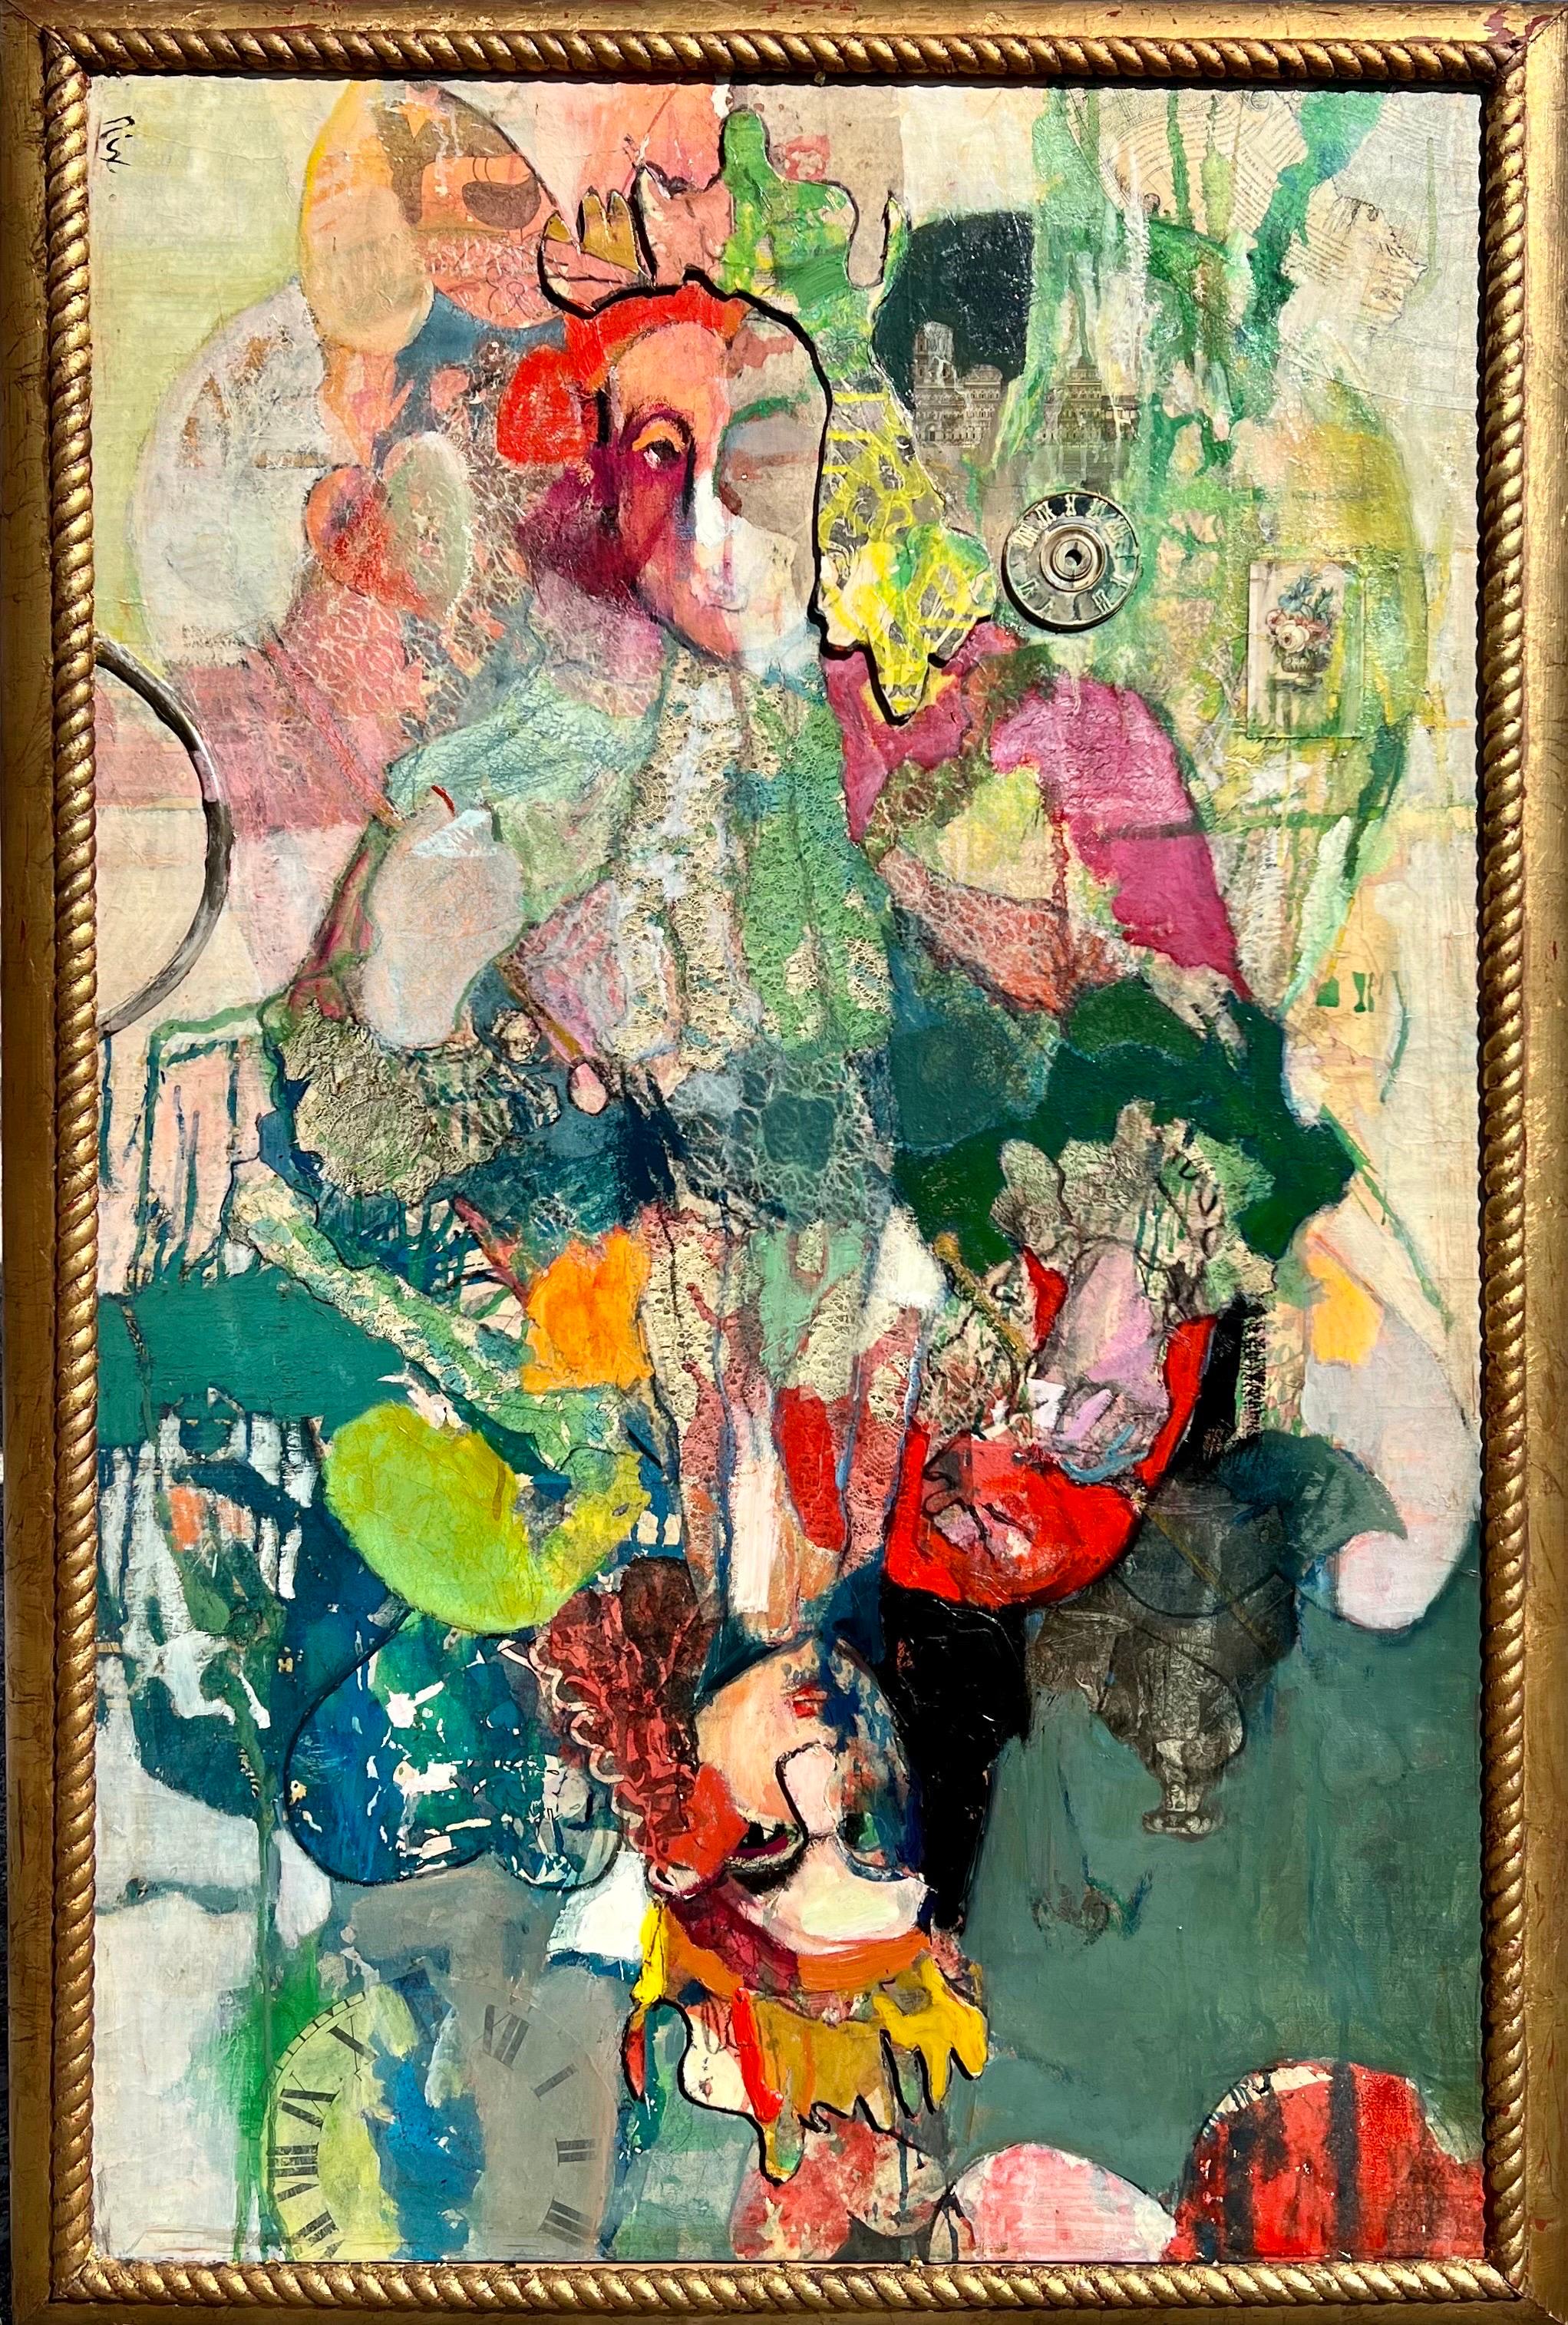 Patricia Nix, 
Peinture mixte huile sur toile avec collage, signée au recto
1984
Titré au verso "Queen of Hearts" et entièrement signé.
Le format encadré mesure environ 55 X 37.  la toile est de 50.5 X 32.5
Elles font partie d'une série célèbre